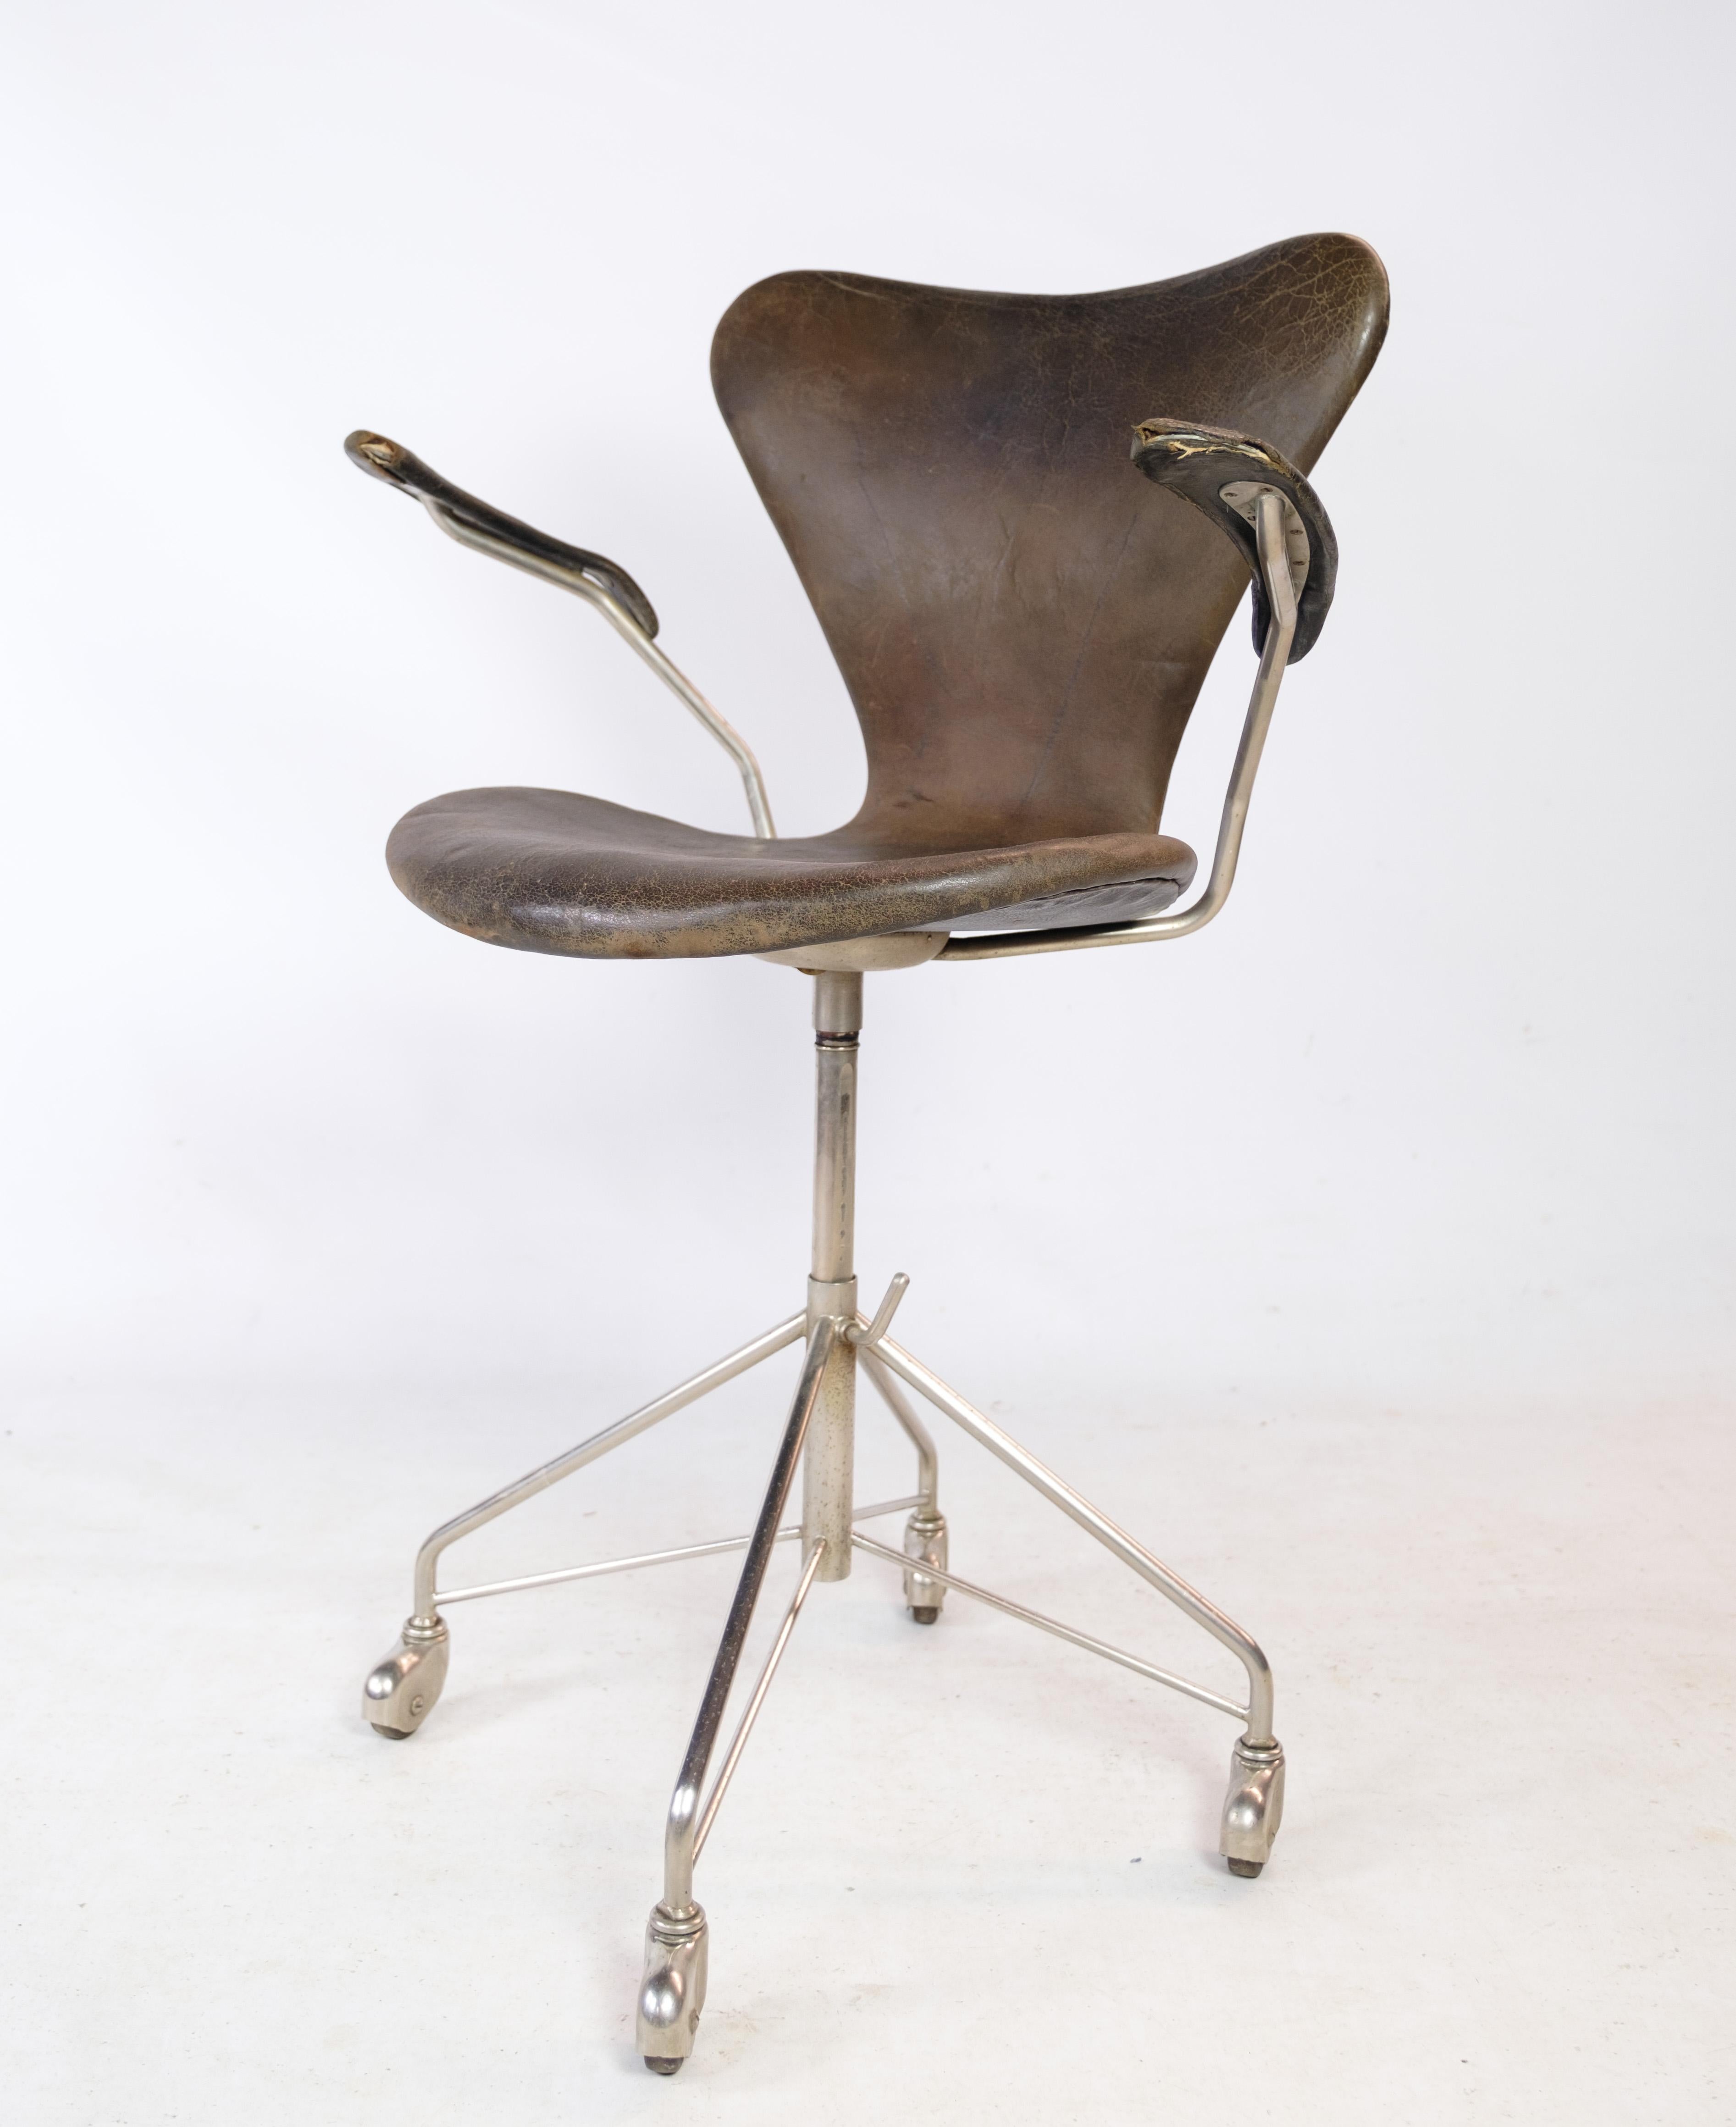 Chaise de bureau Seven, modèle 3217, avec accoudoirs et fonction pivotante en cuir brun foncé d'origine, conçue par Arne Jacobsen dans les années 1950 et fabriquée par Fritz Hansen. La chaise est en état d'usage avec patine et usure. Il est livré